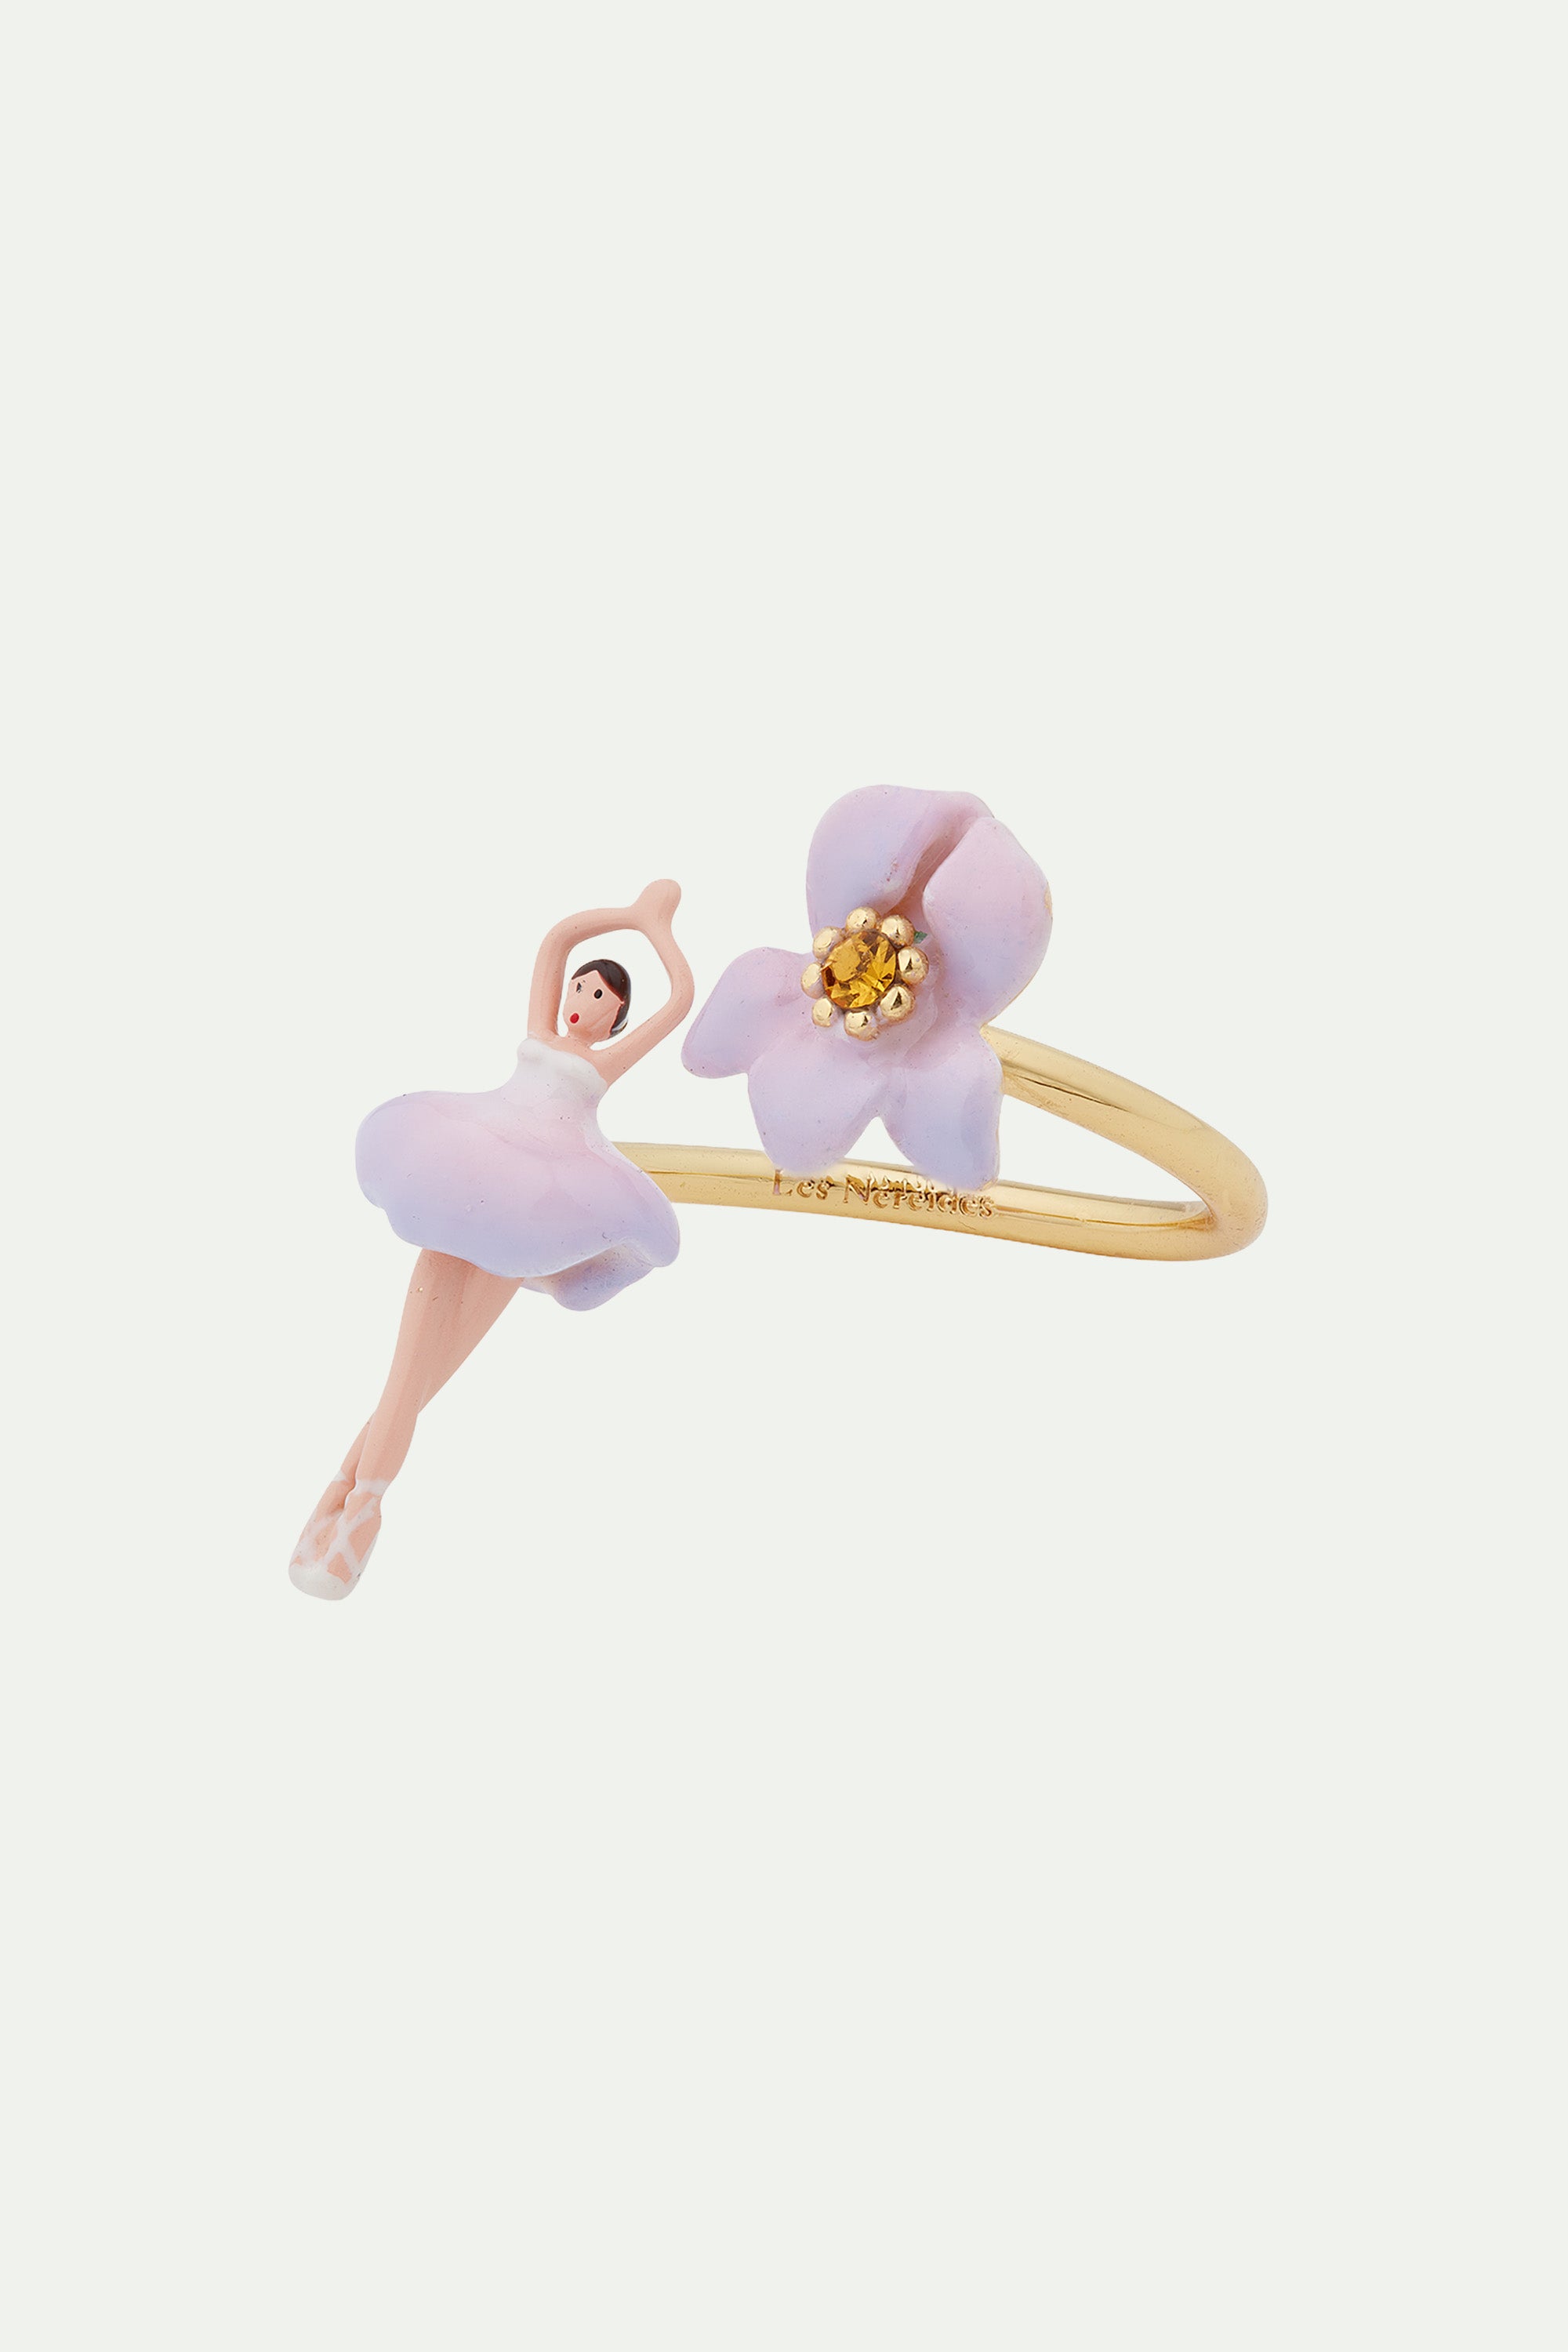 Iris mini ballerina adjustable ring